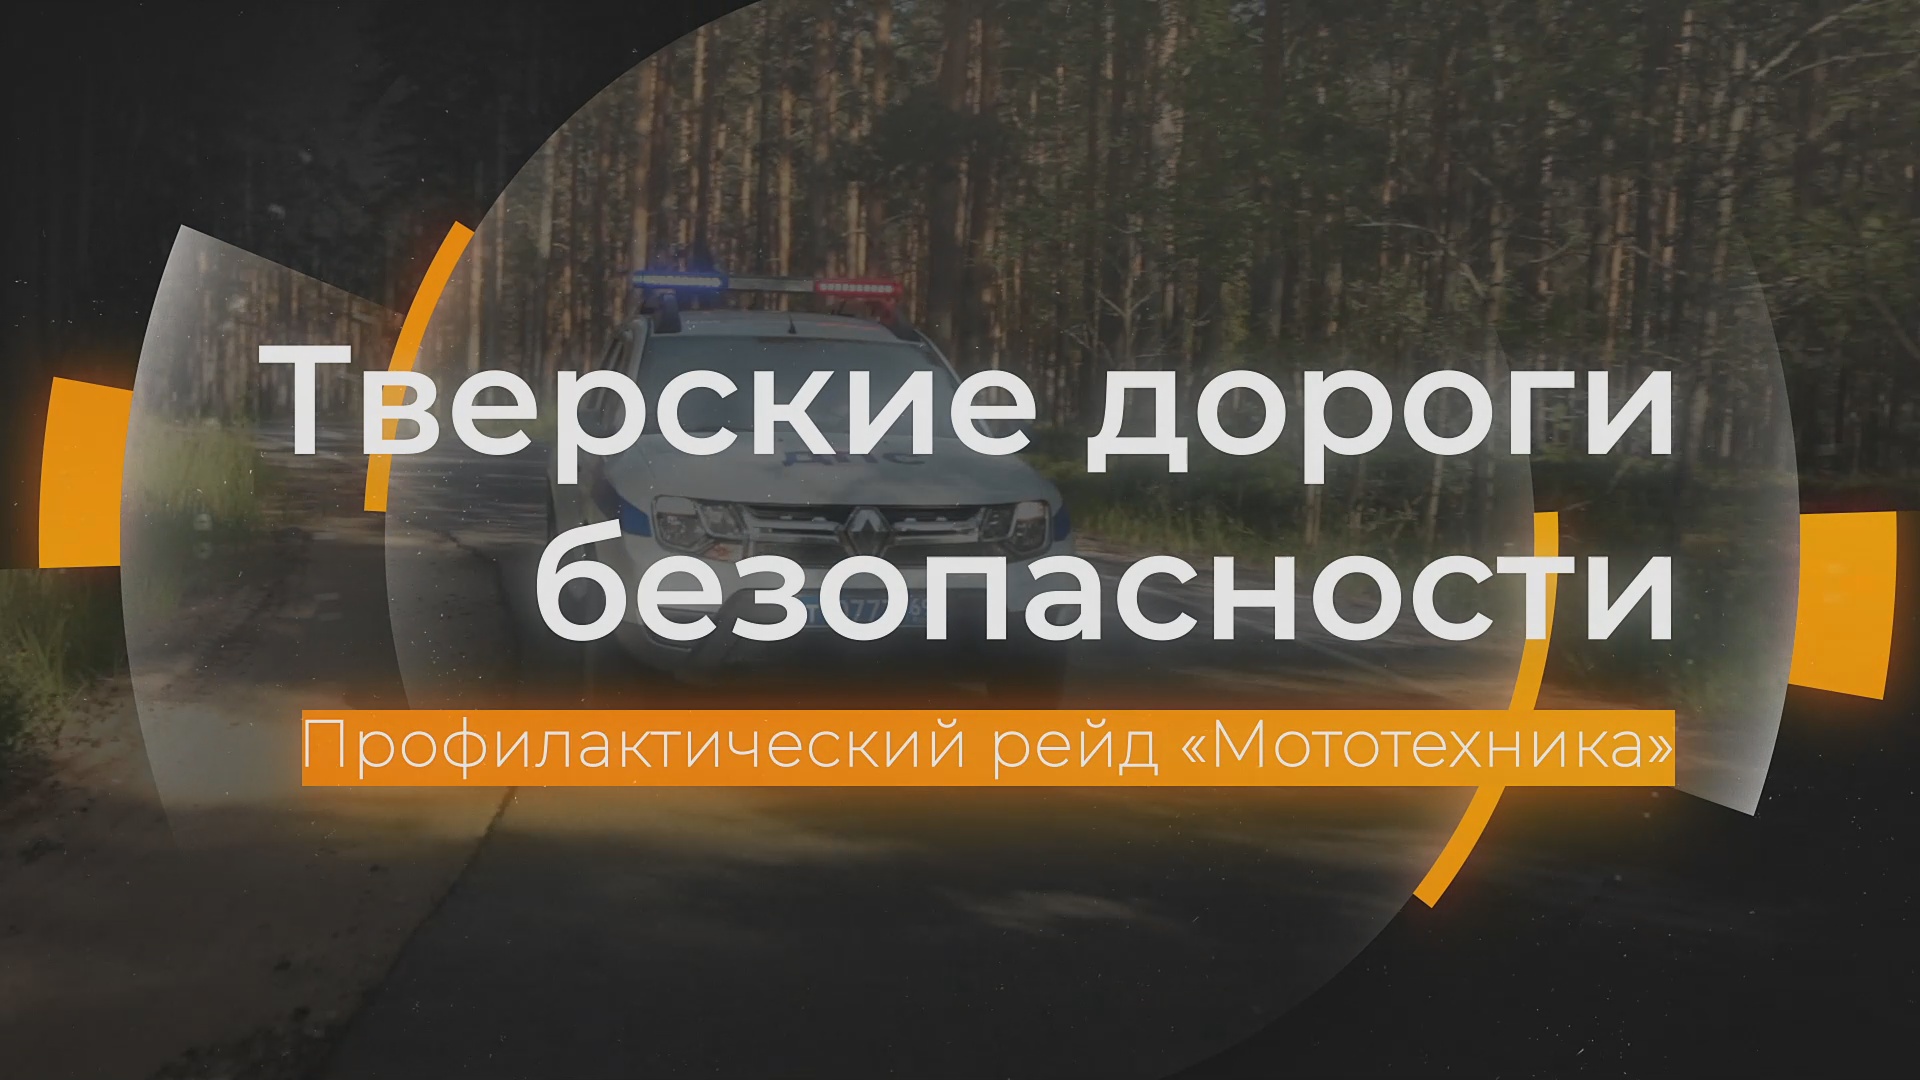 Массовые проверки мотоциклистов в Твери: Тверские дороги безопасности от 20.05.2024